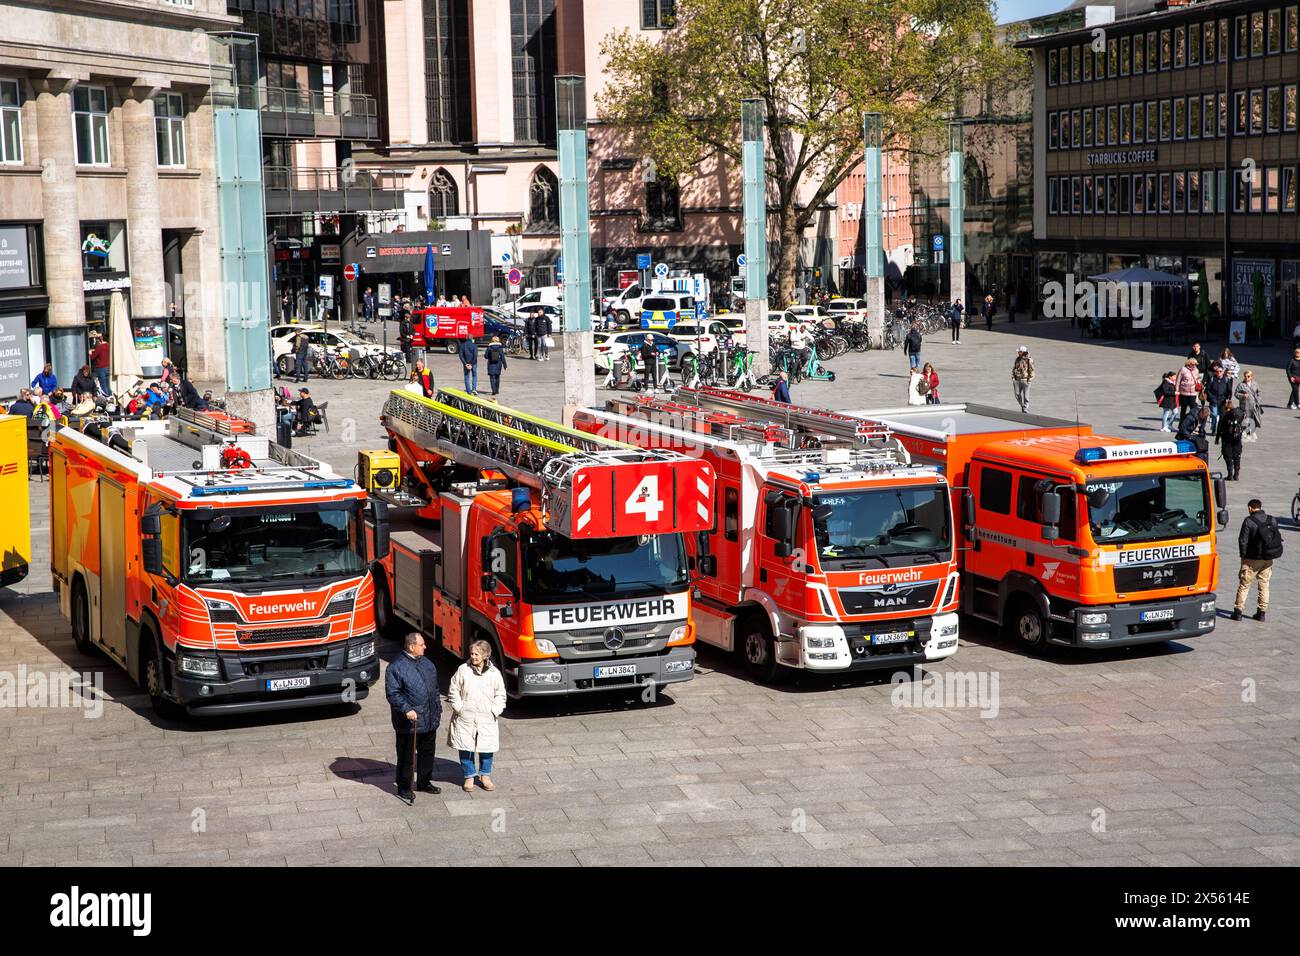 Feuerwehrfahrzeuge stehen vor dem Hauptbahnhof in Köln. Feuerwehrfahrzeuge stehen vor dem Hauptbahnhof, Köln, Deutschland. Stockfoto